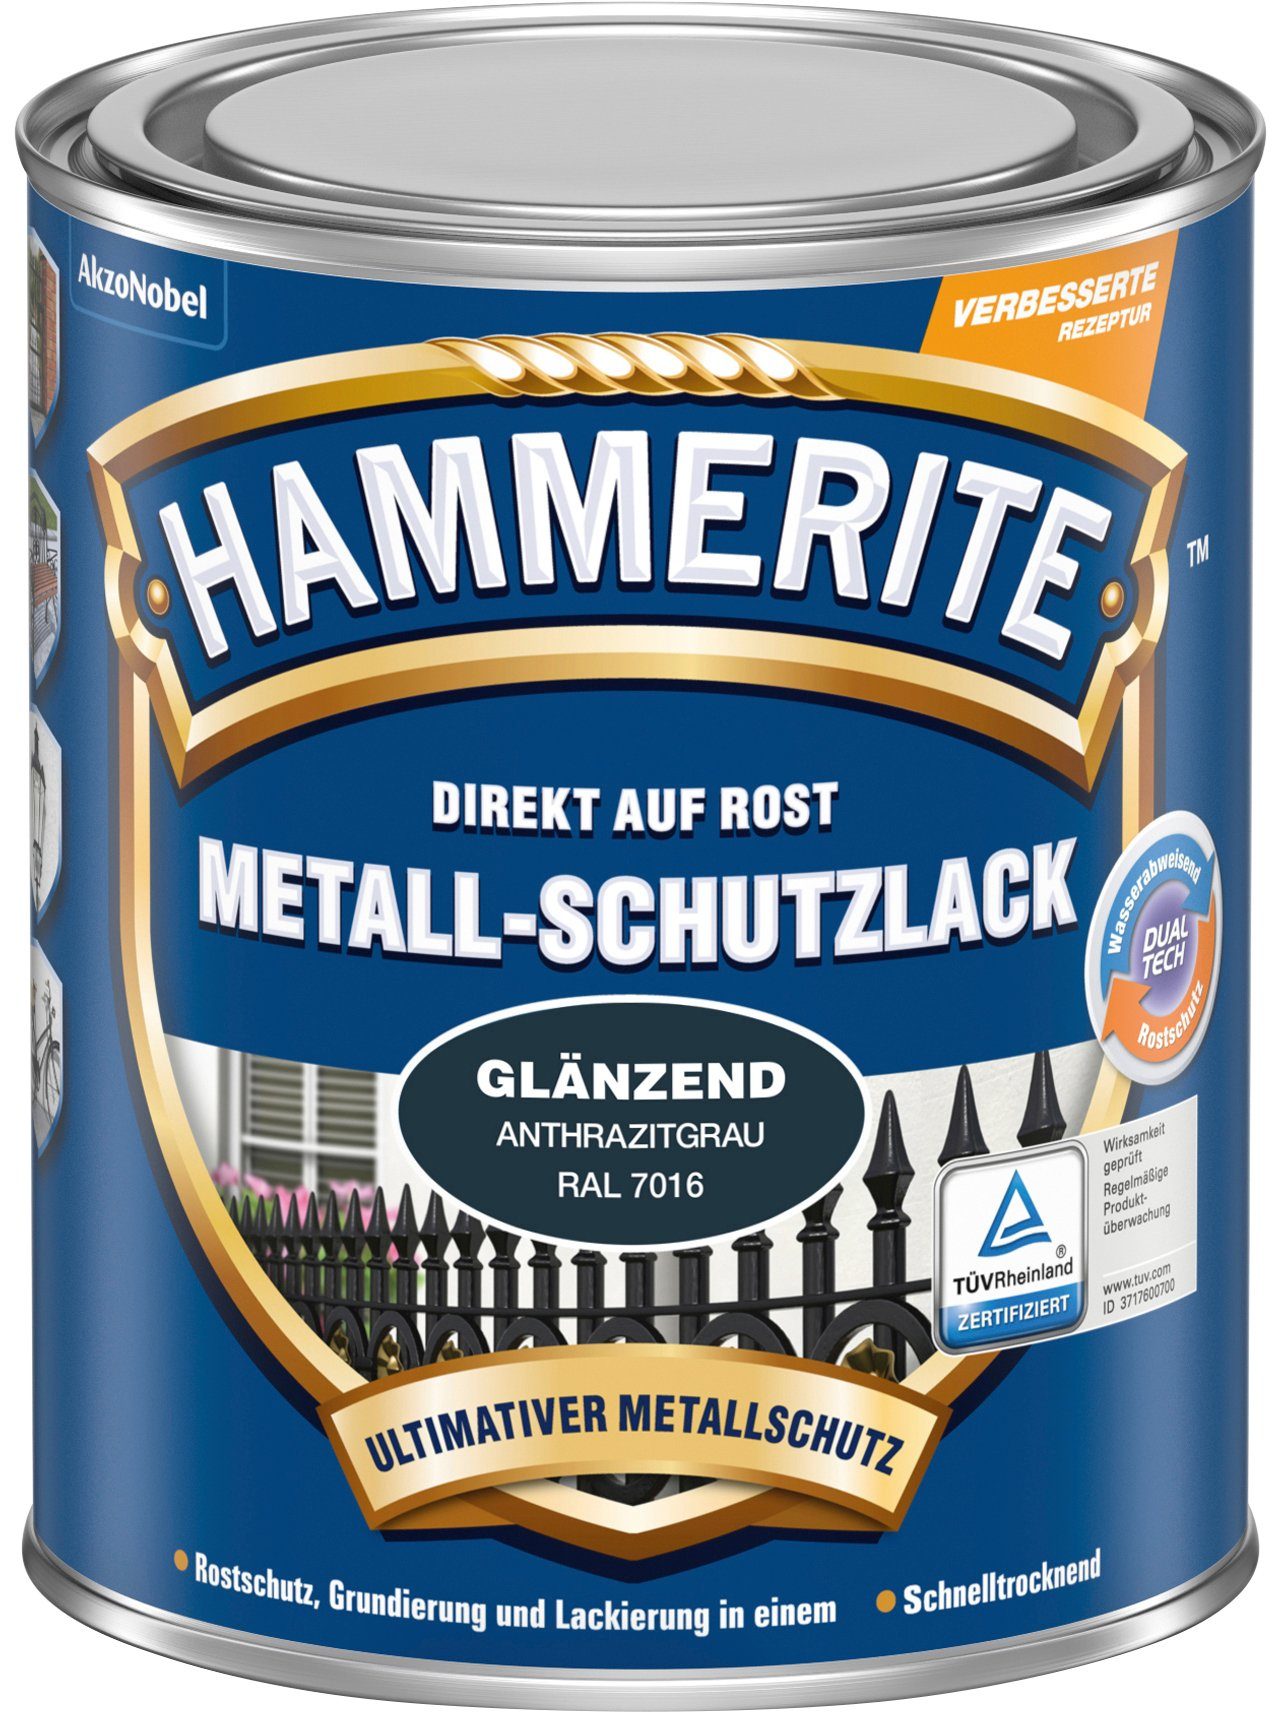 ROST, Hammerite  Liter AUF DIREKT Metallschutzlack glänzend, 0,25